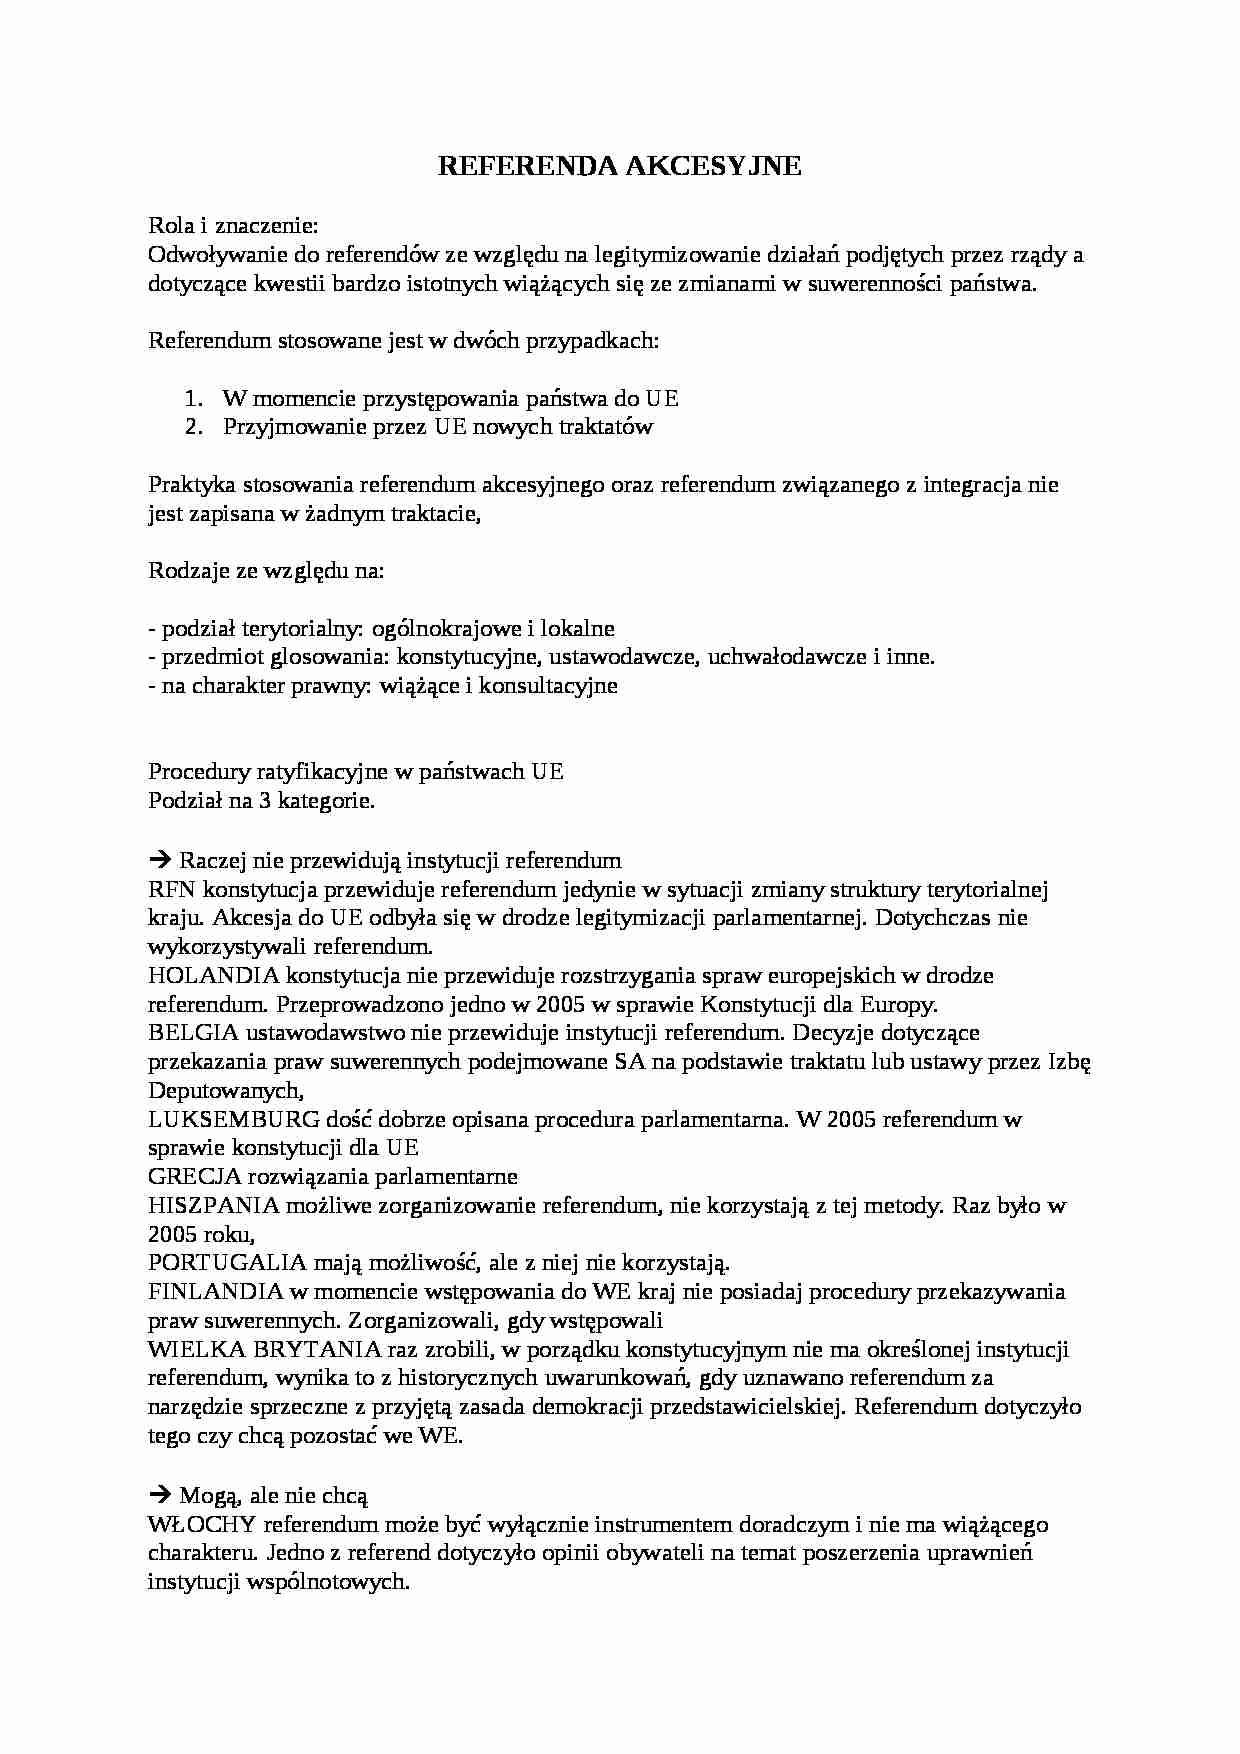 Polska w Procesie Integracji - referenda akcesyjne  - strona 1